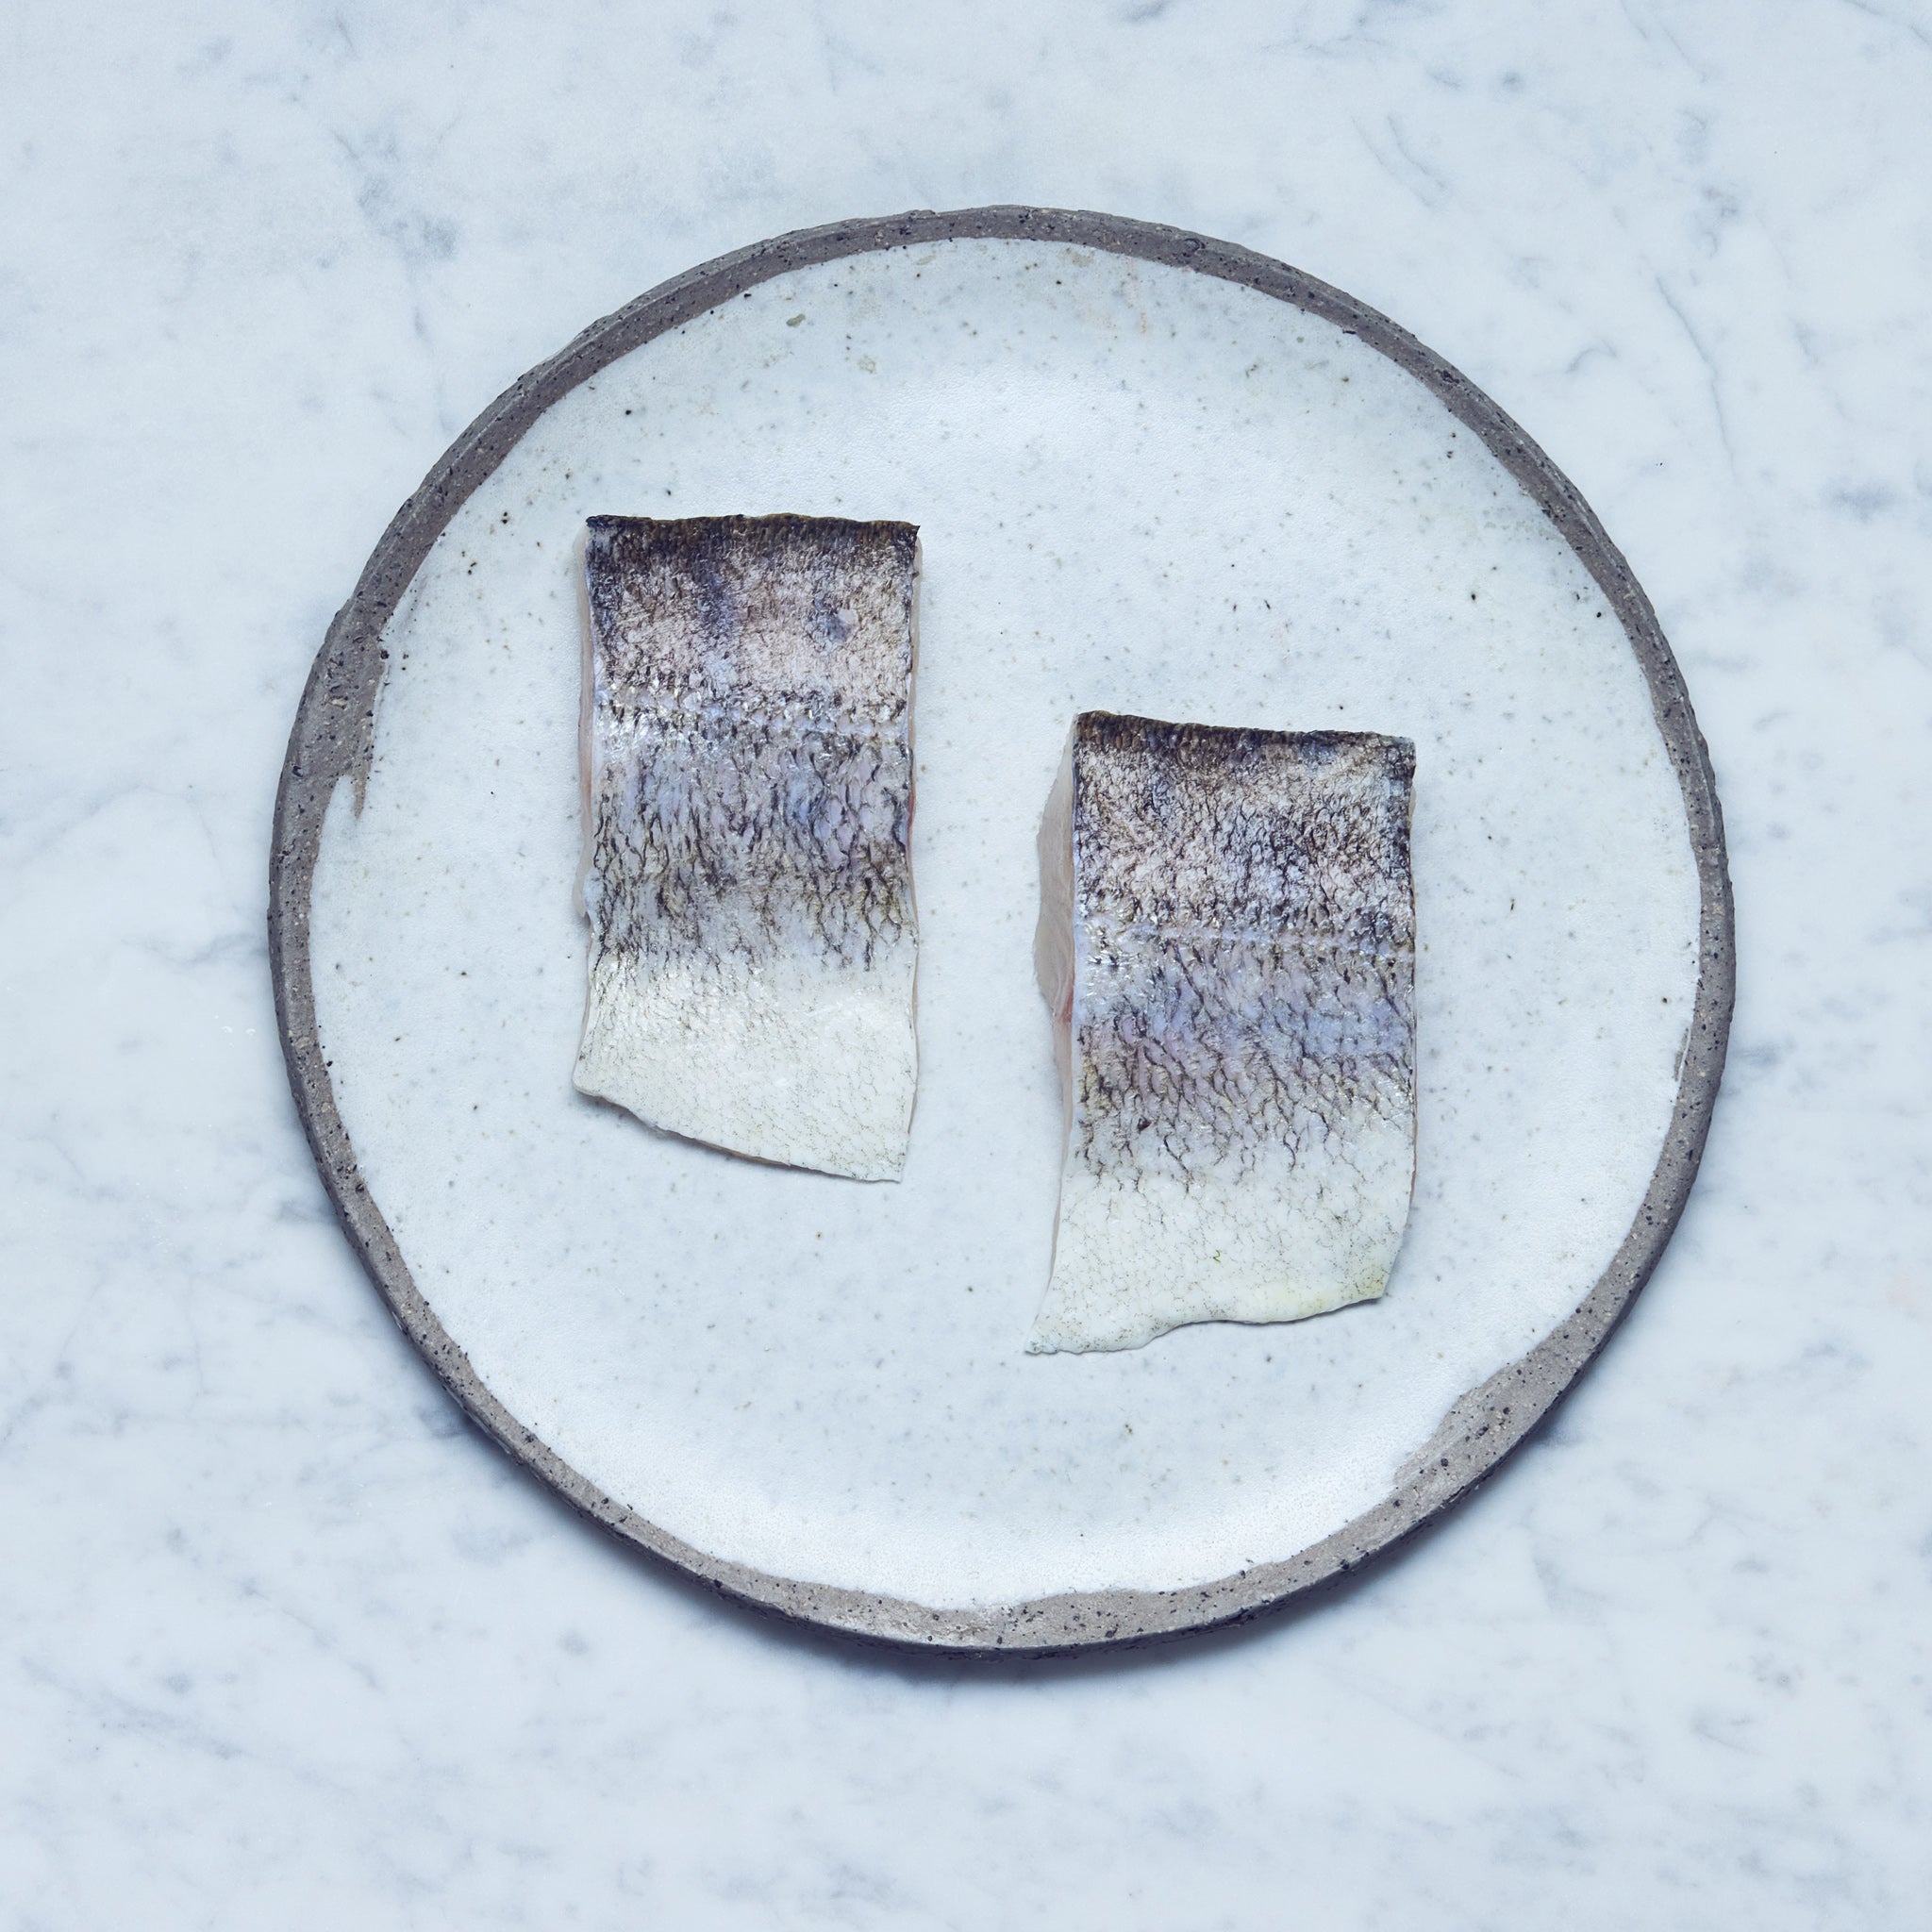 Ein runder Teller mit frischen Zander-Filet in zwei Stücke geschnitten auf einer Marmoroberfläche.